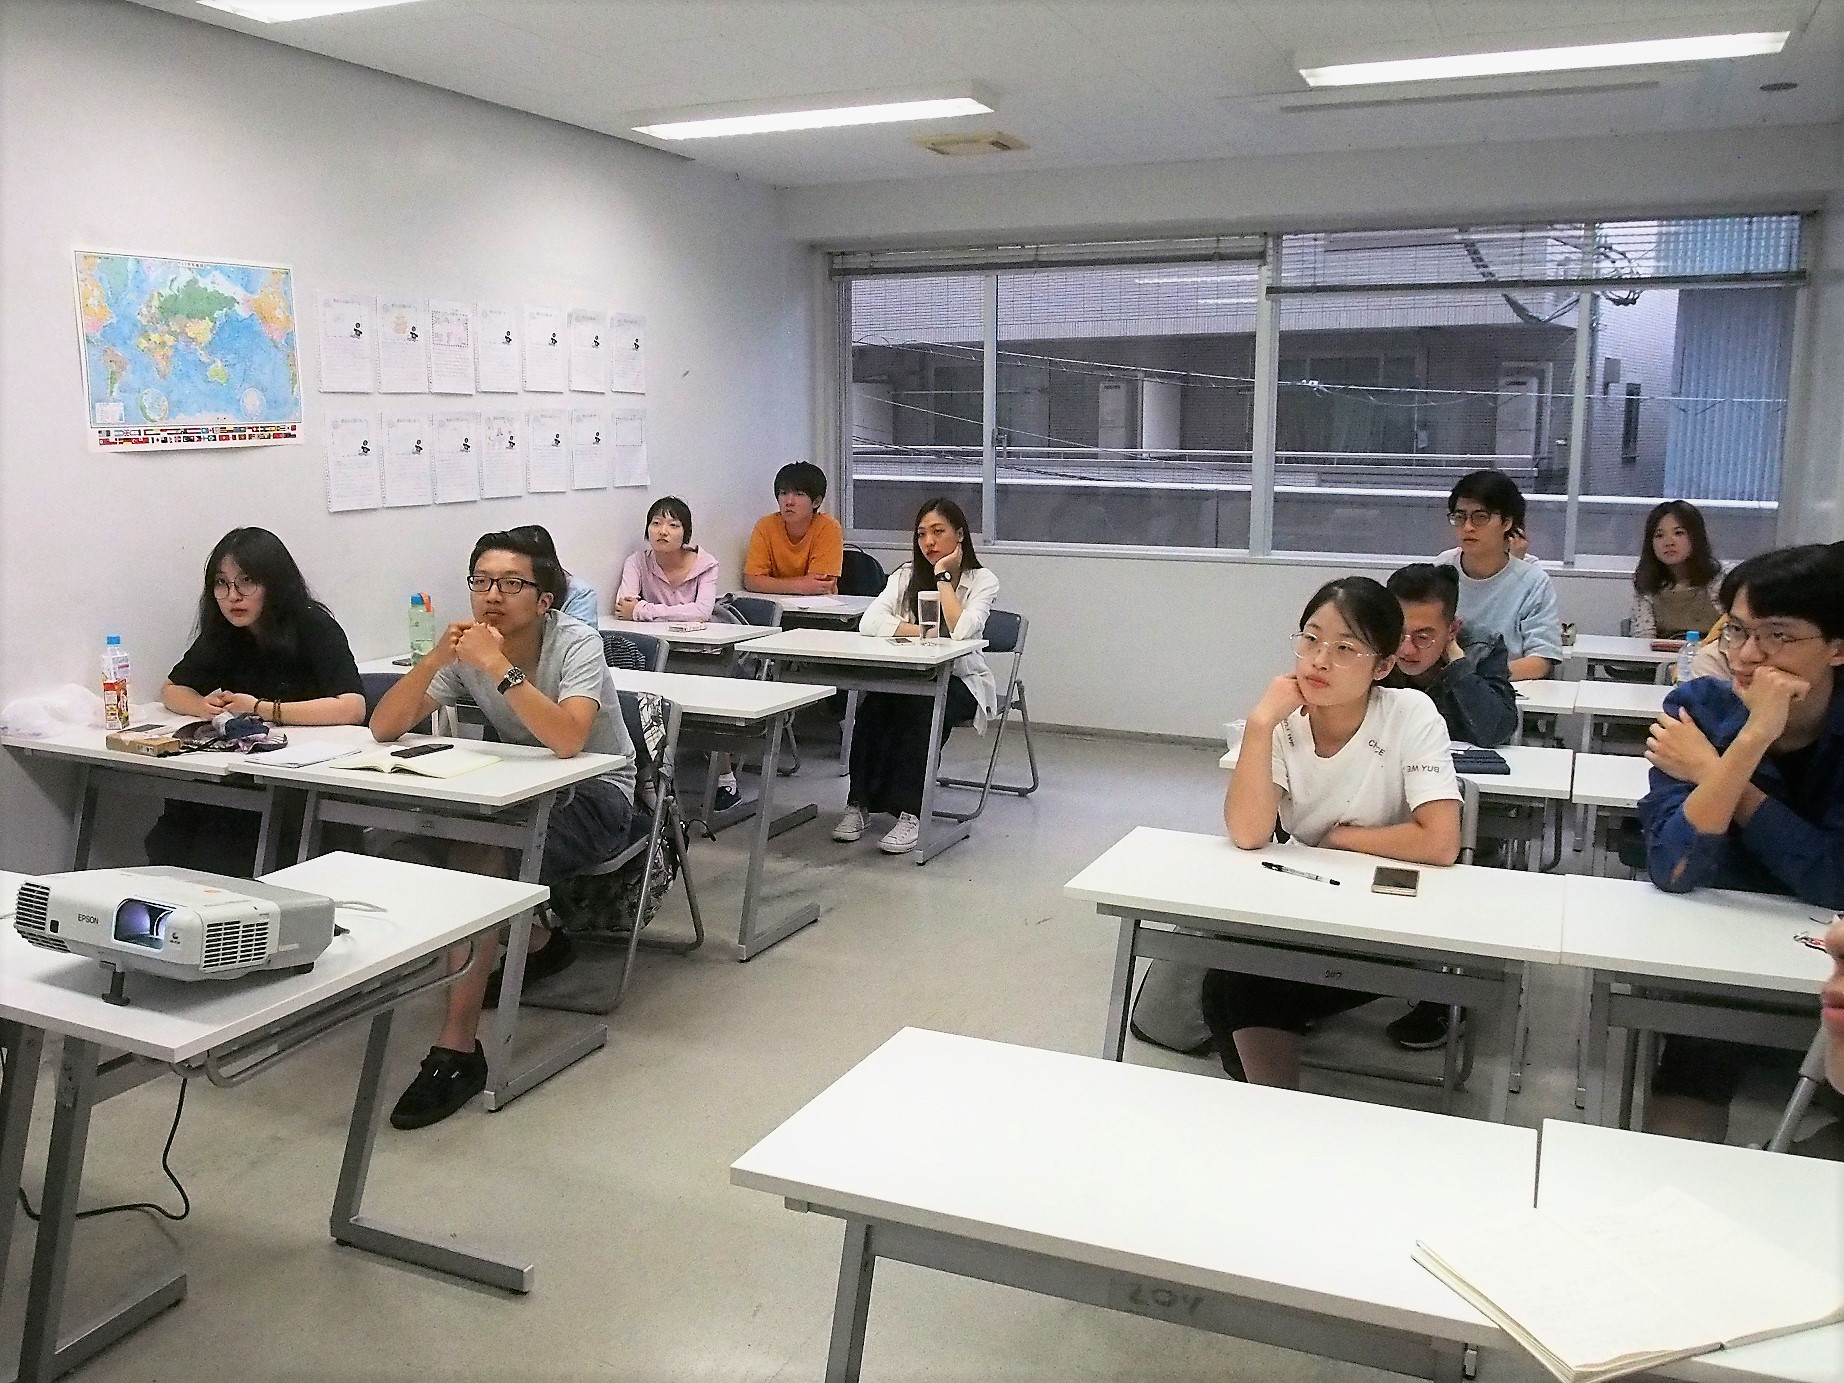 日本語クラス潜入レポート Vol 2 横浜デザイン学院 日本語教育いどばた